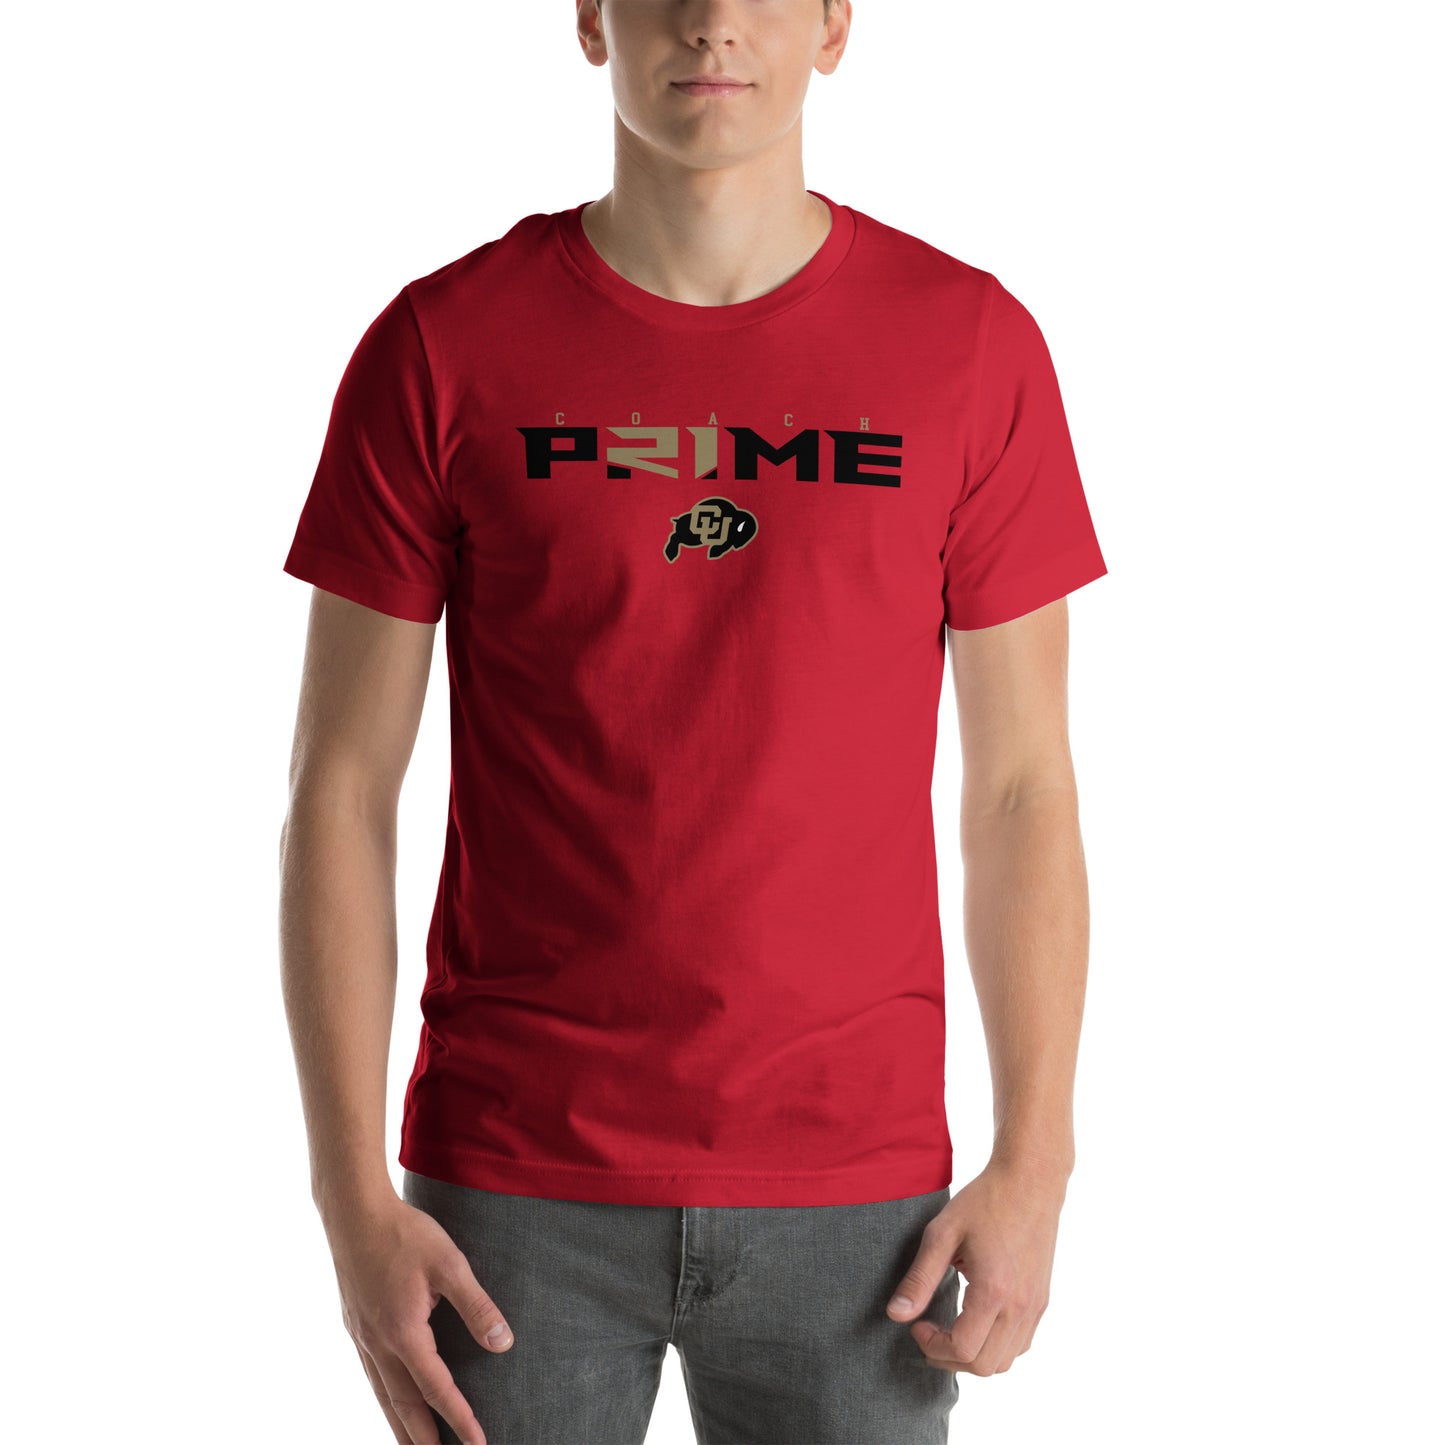 Prime t-shirt